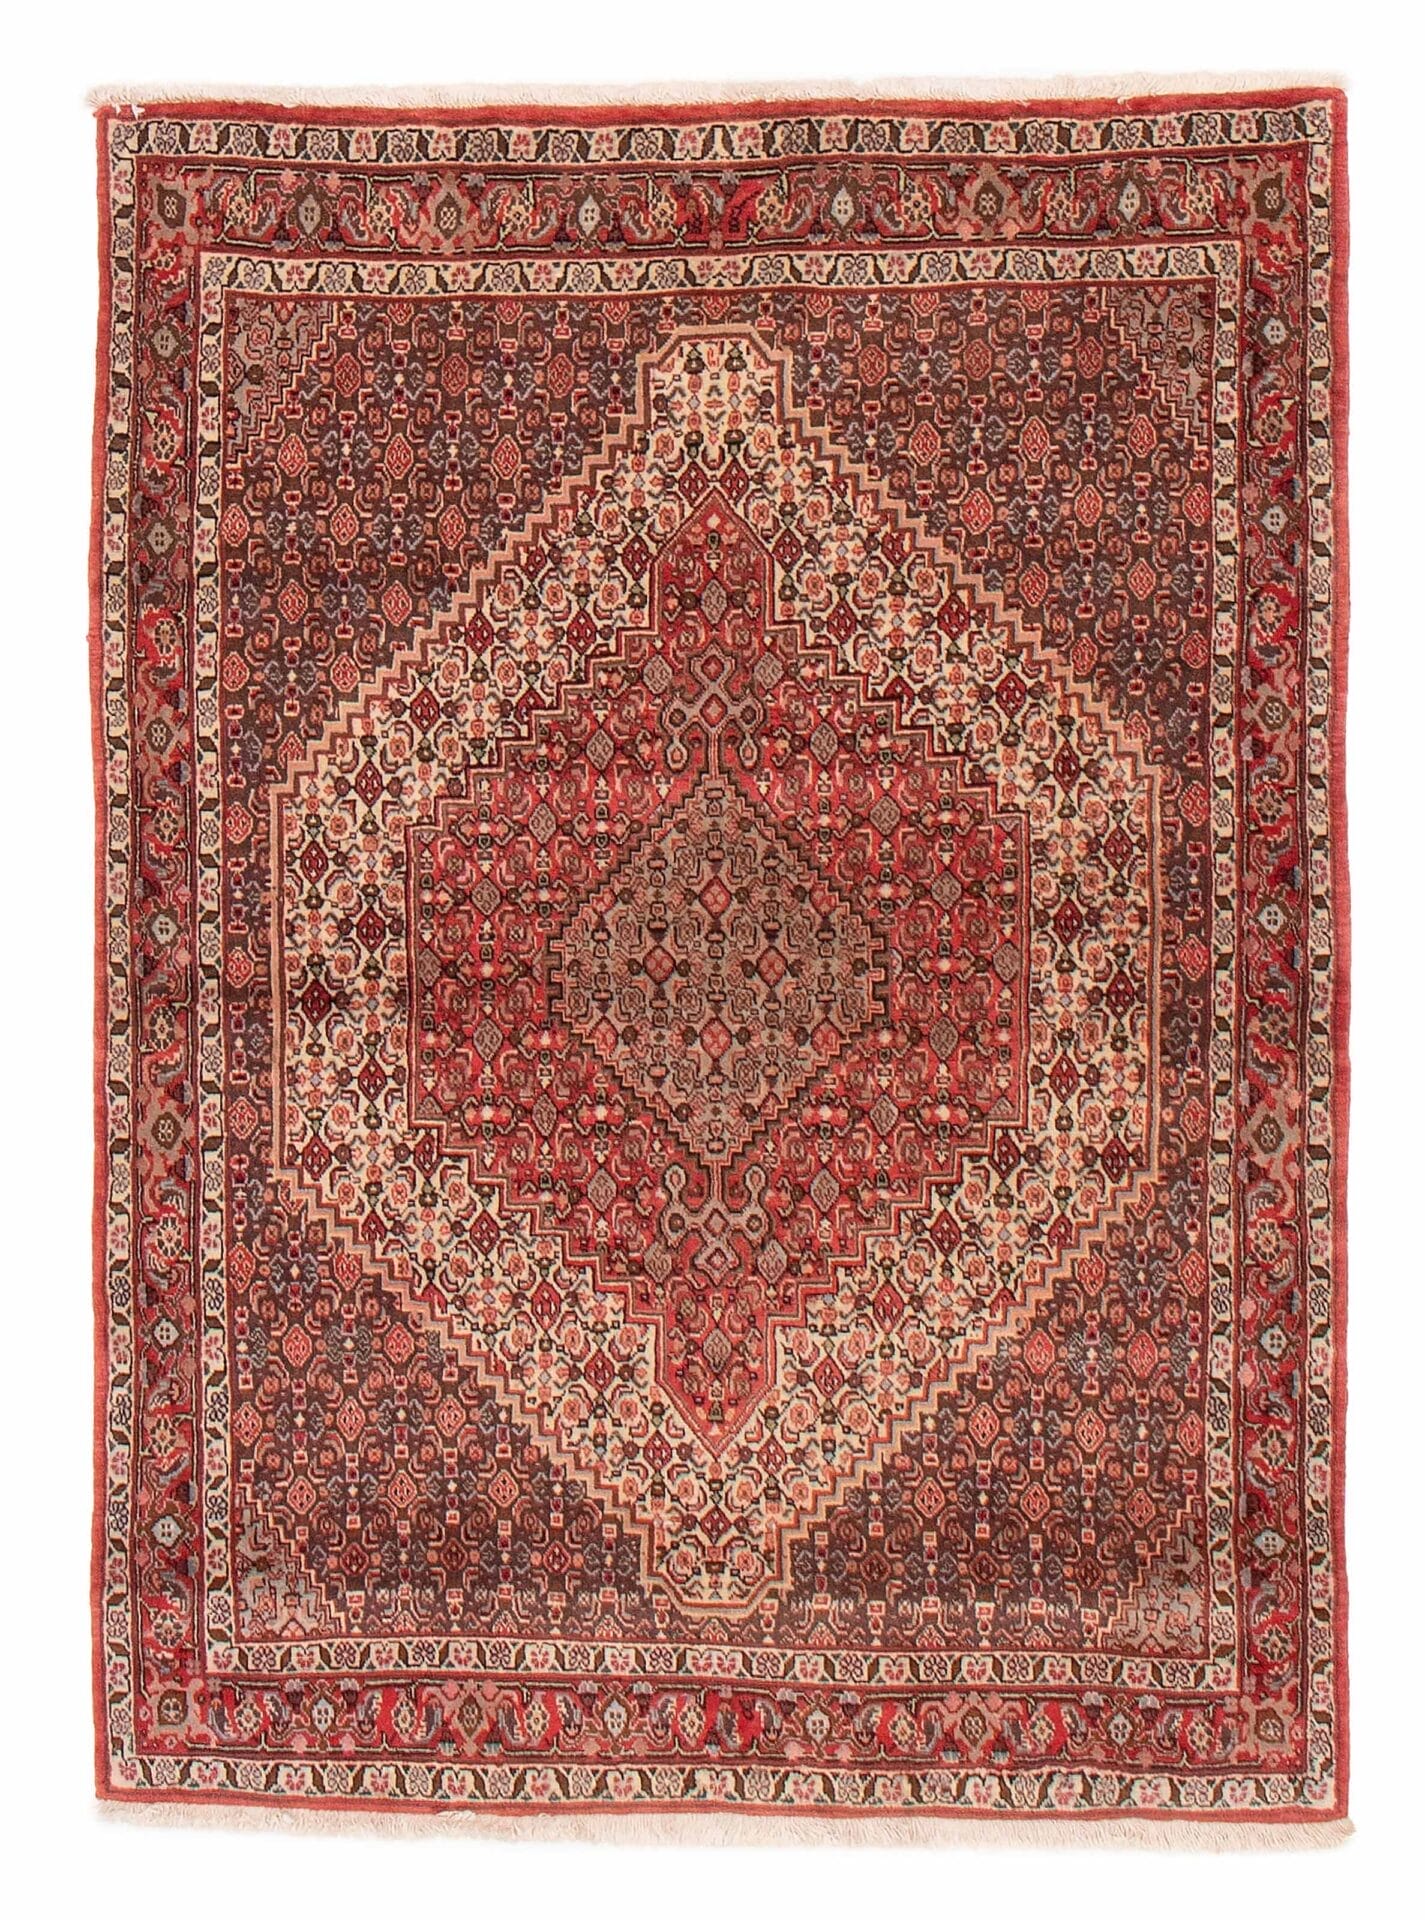 Een rood en beige tapijt op een witte achtergrond.